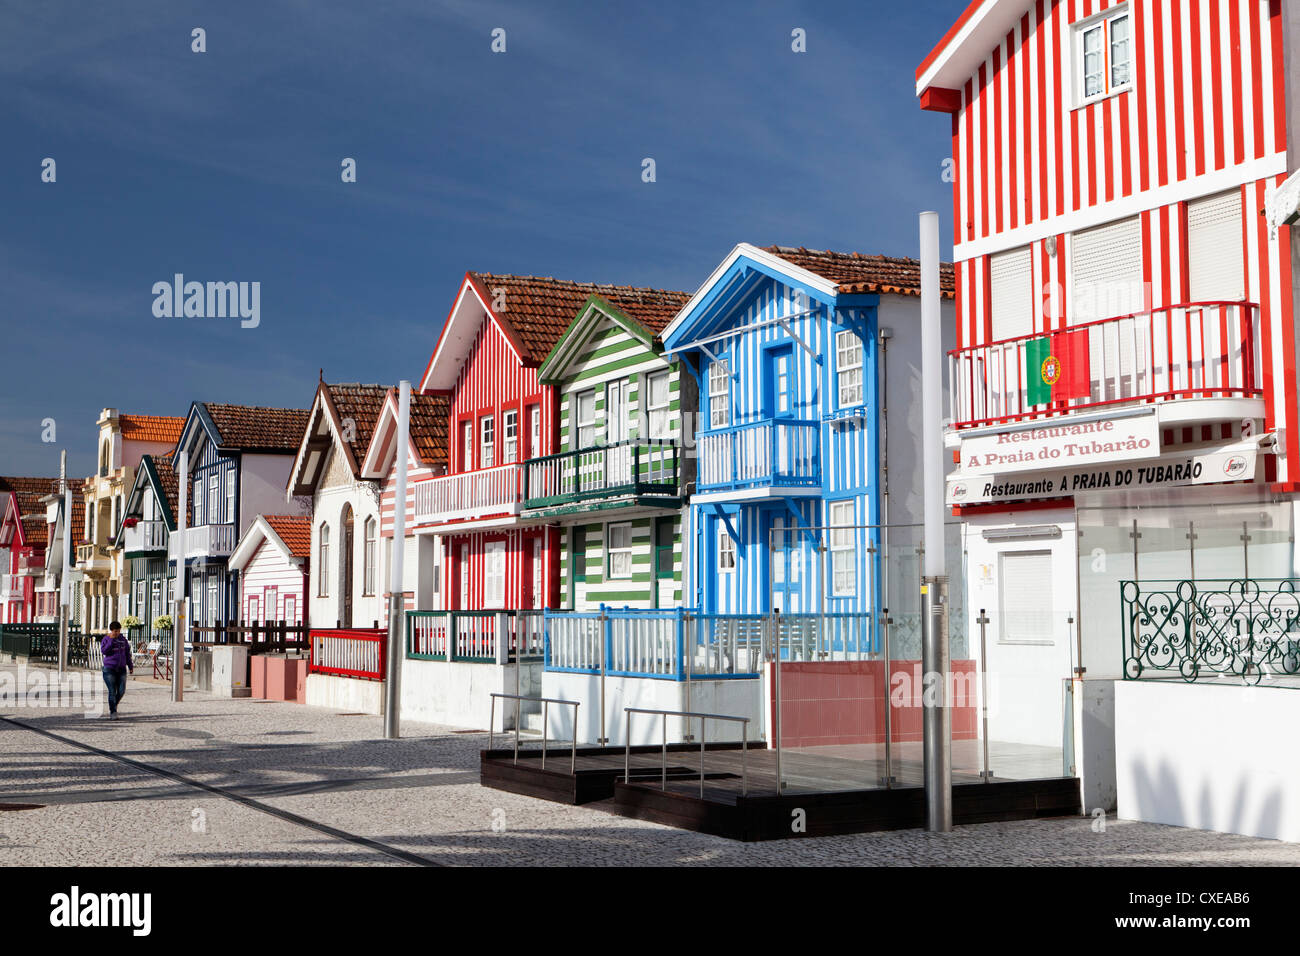 Maisons de Plage colorés traditionnels (anciennement cottages de pêcheurs) dans la région de Costa Nova, Beira Litoral, Portugal Banque D'Images